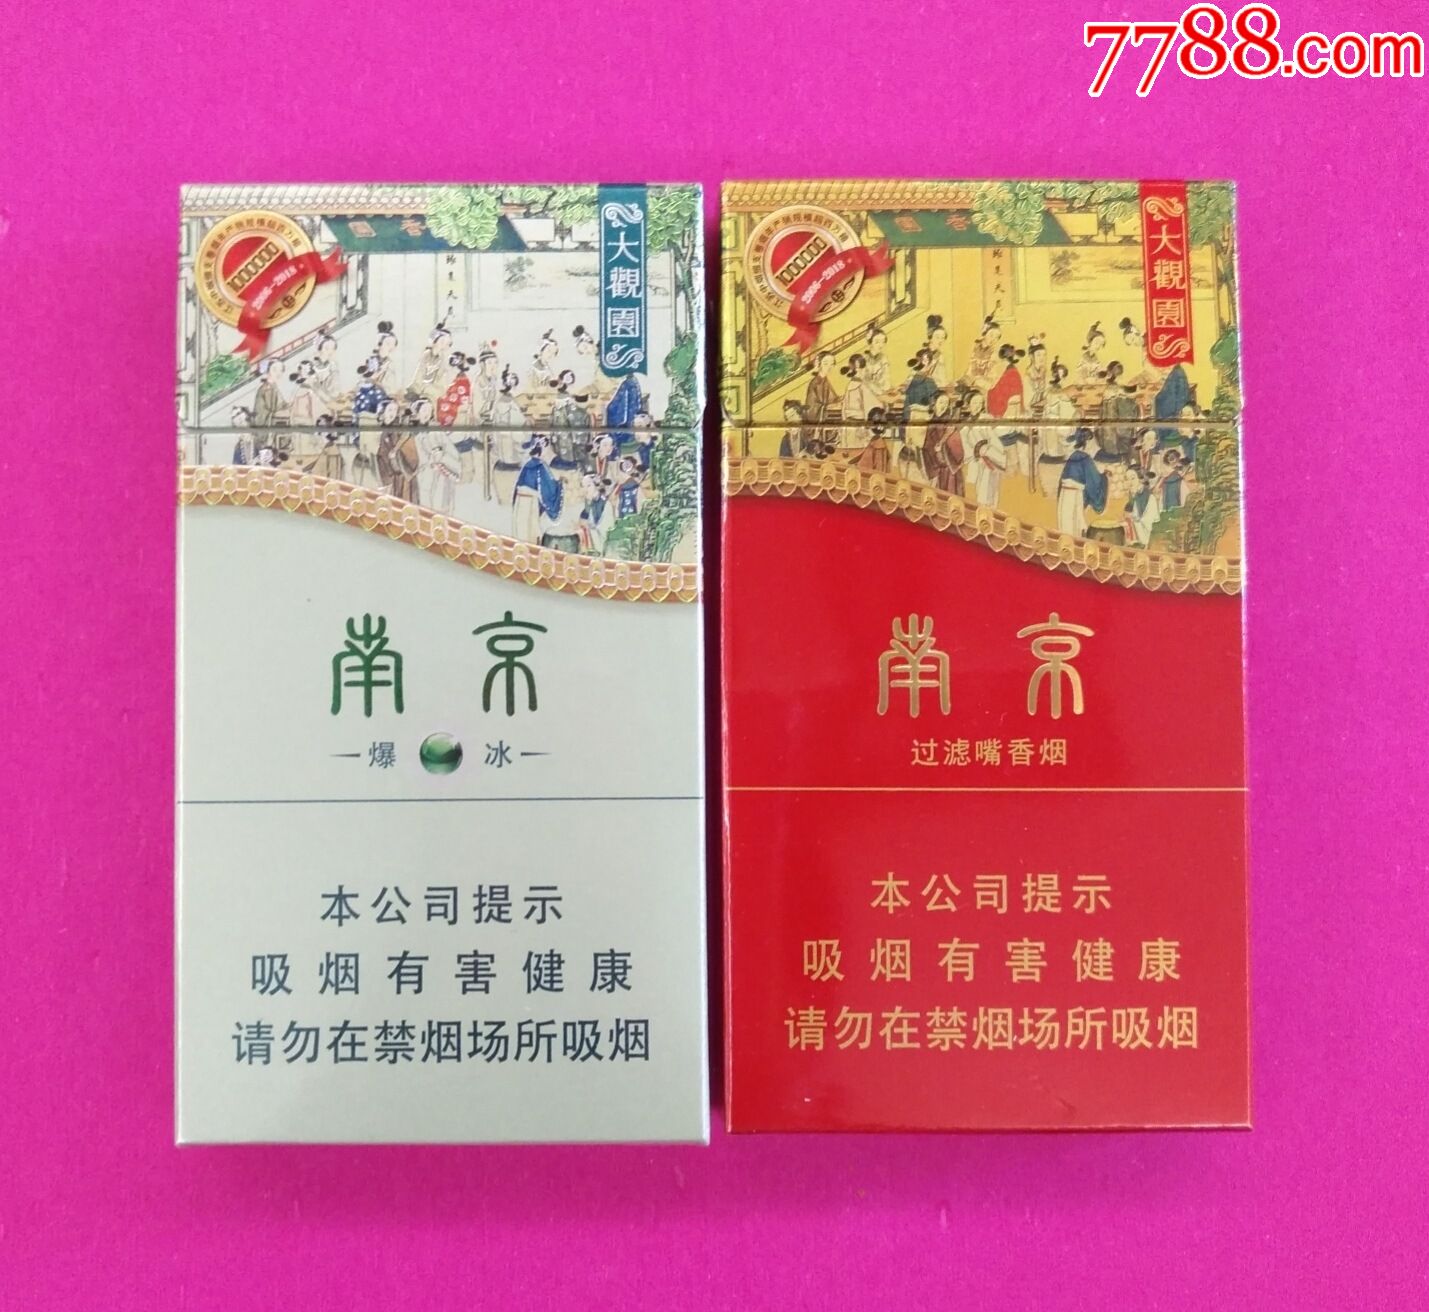 南京大观园江苏中烟细支卷烟年产销量超百万箱1对非卖品少